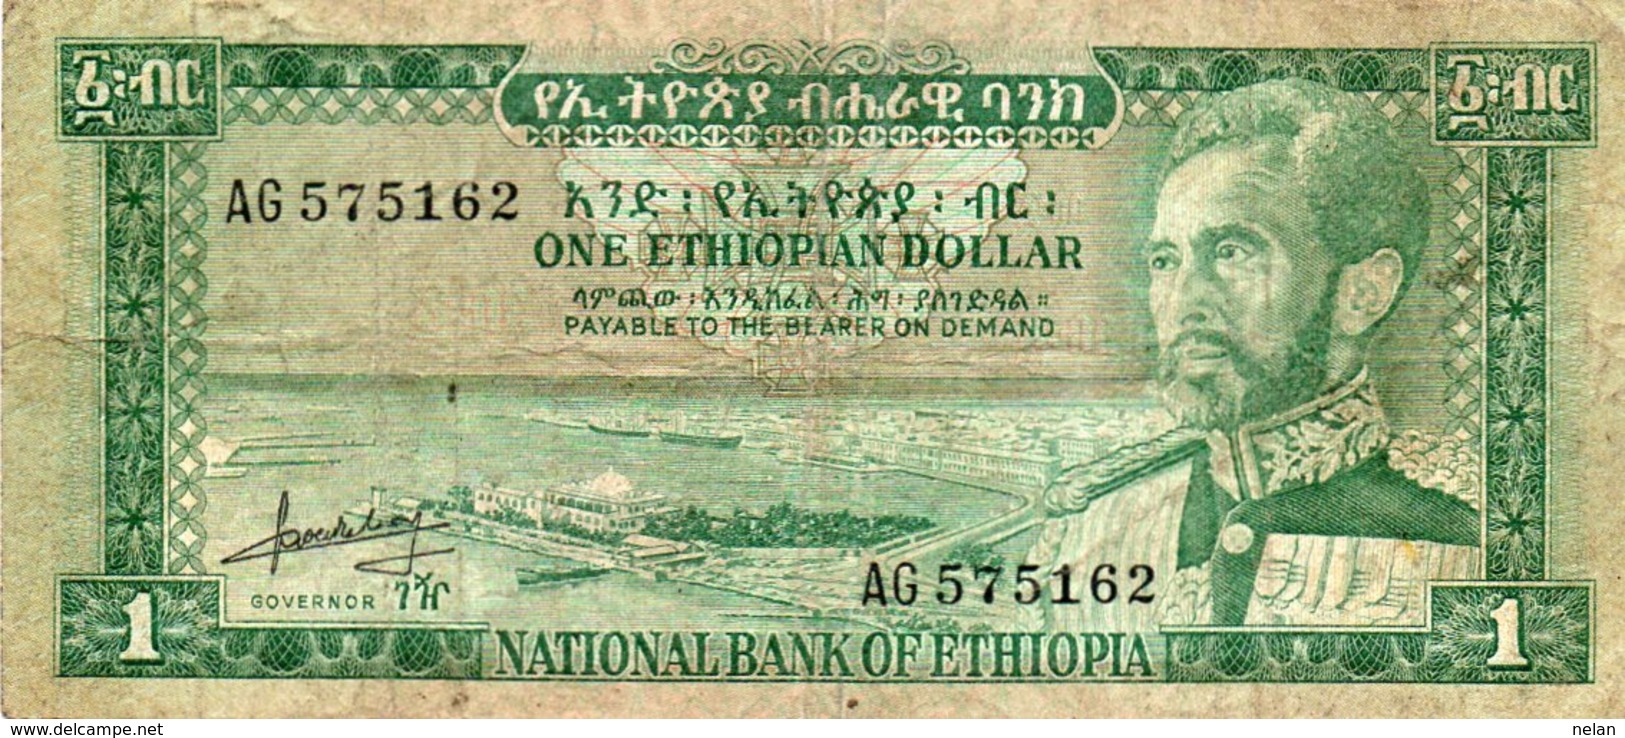 ETHIOPIA 1 DOLLAR 1966 P-25 - Ethiopië